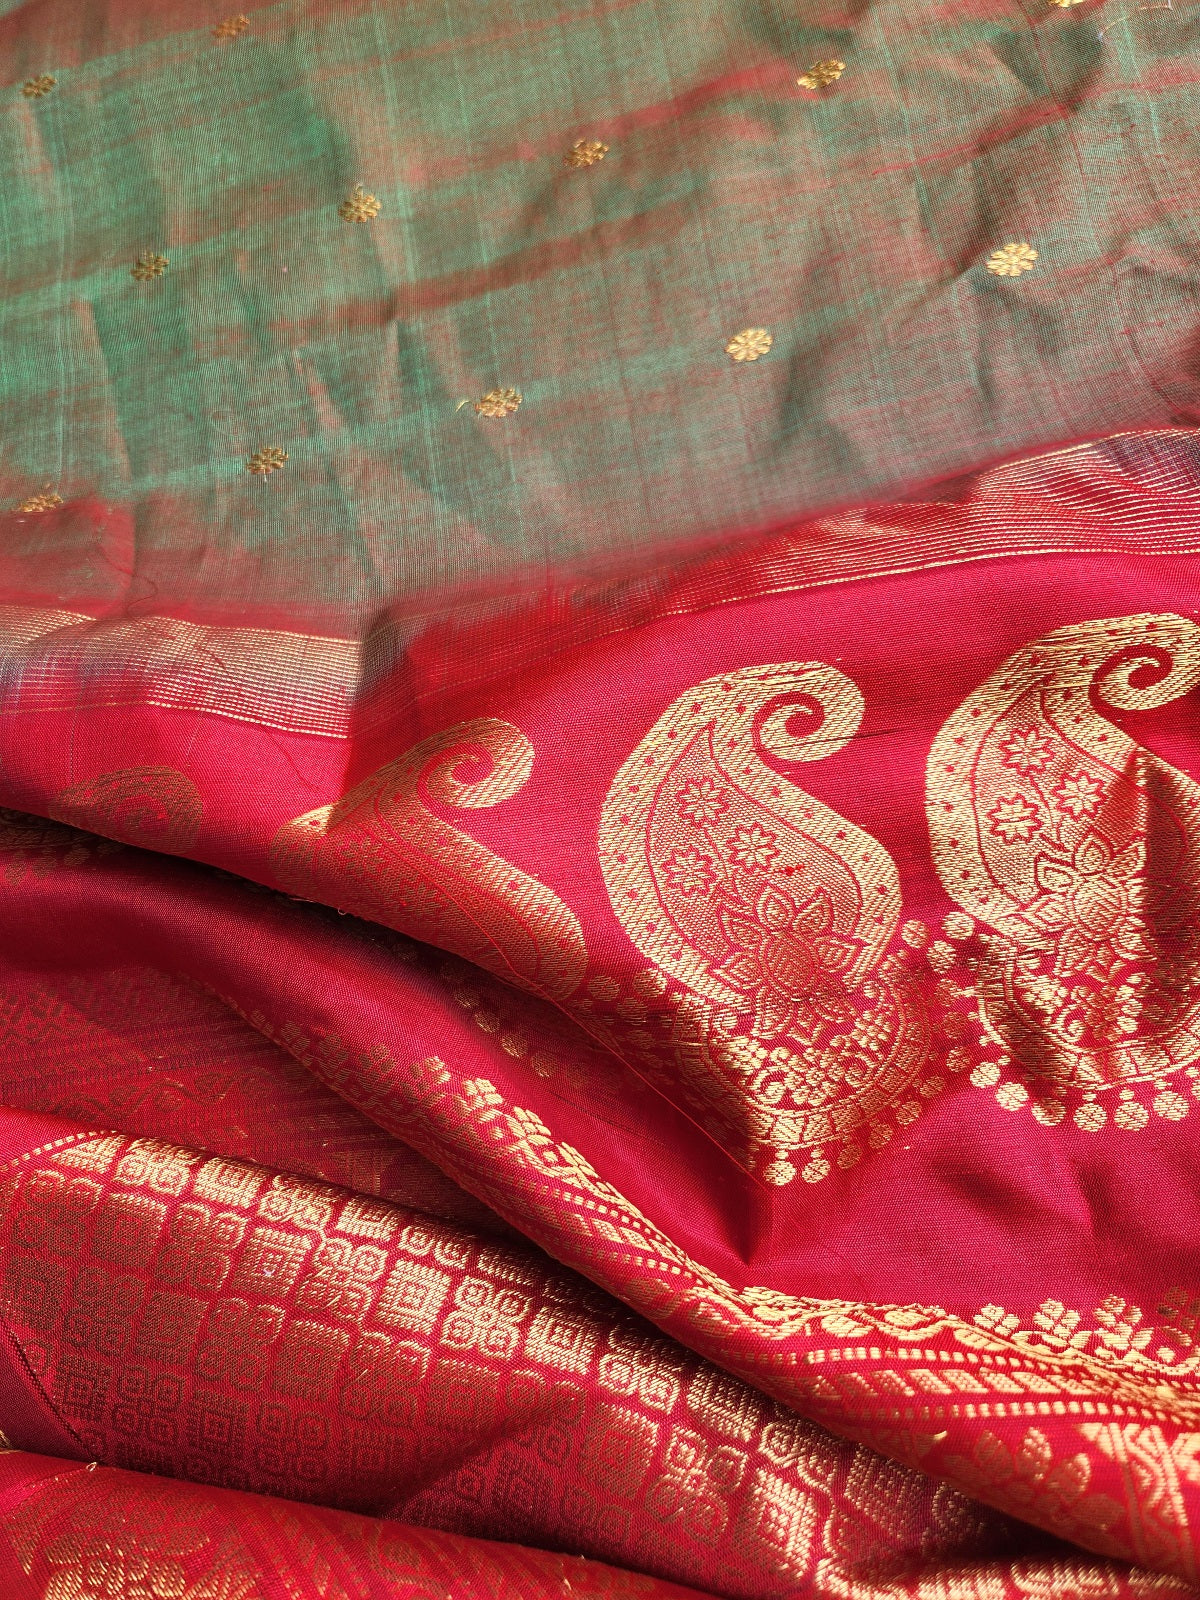 gadwal saree handloom saree green saree wedding shopping SICO saree Mehndi look